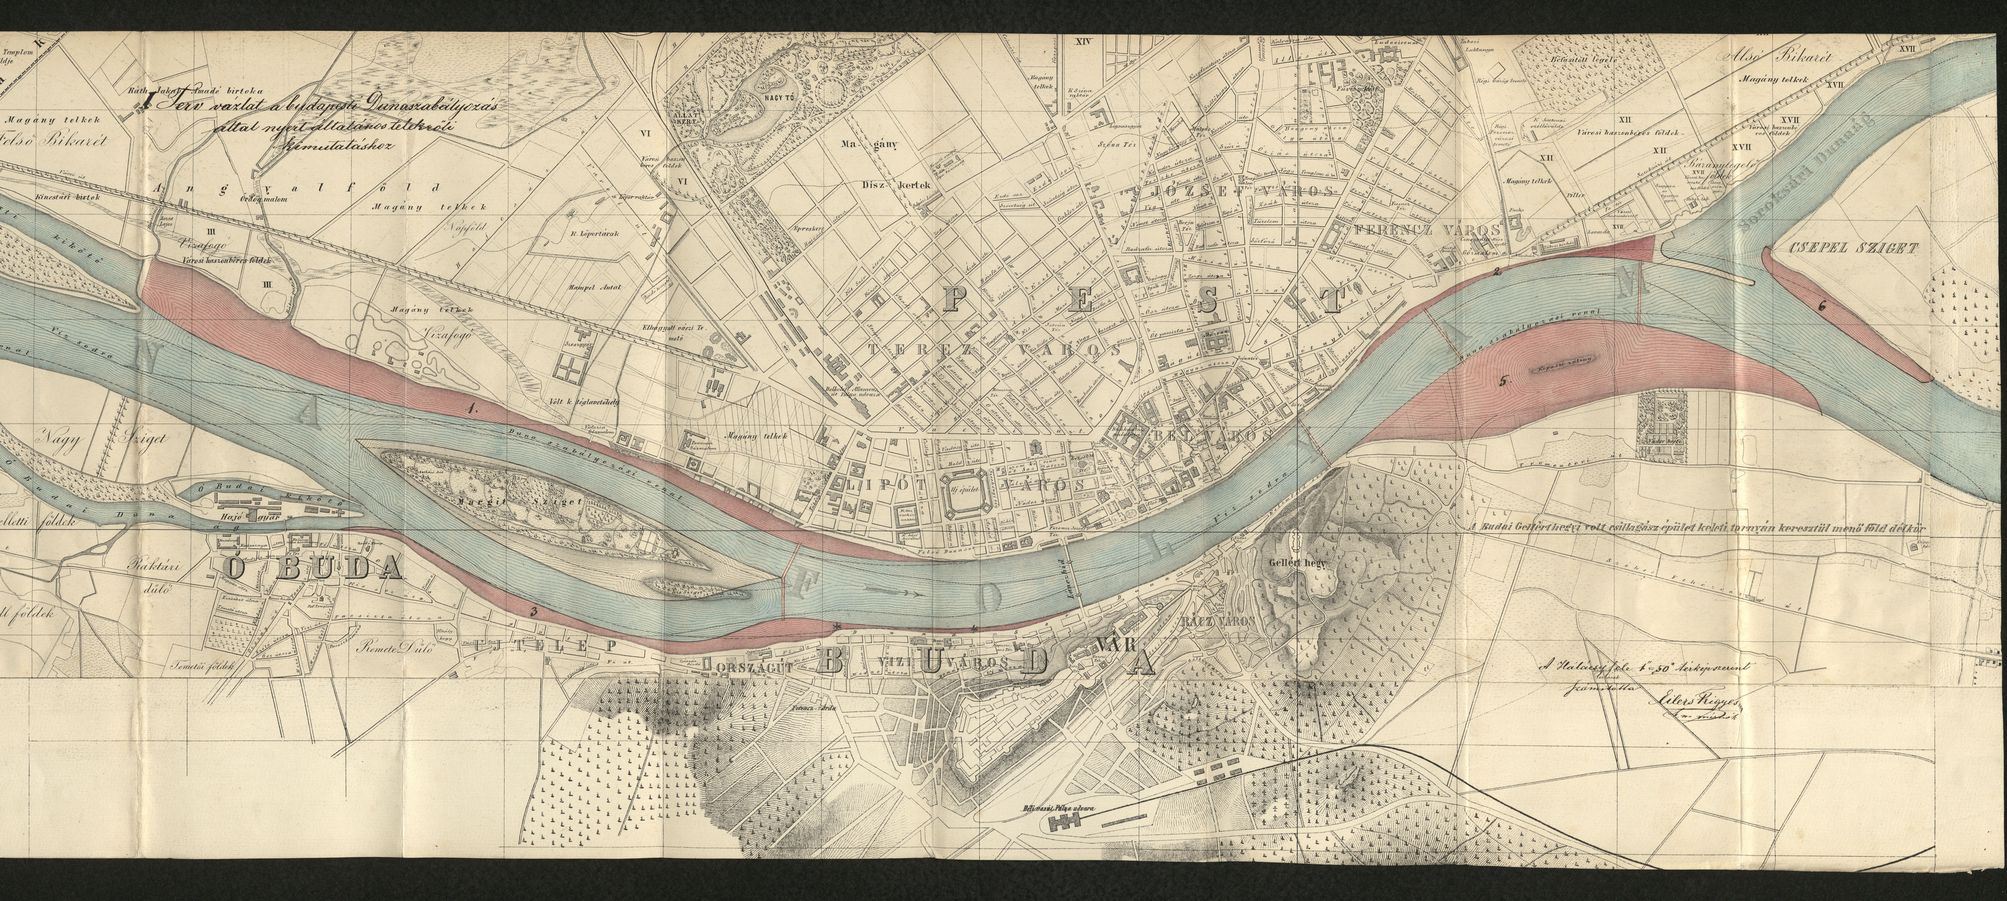 Buda, Pest és Óbuda belterületének térképe, amelyen a Duna szabályozásával nyert területek pirossal vannak jelölve. A Lánchíd már megépült, a Margit híd vonala kijelölve, a későbbi Ferenc József, Horthy Miklós és Déli összekötő vasúti híd még tervezett átkelőként szerepel. Eilers Frigyes, 1870. (MNL OL S116 No._239/1-2)